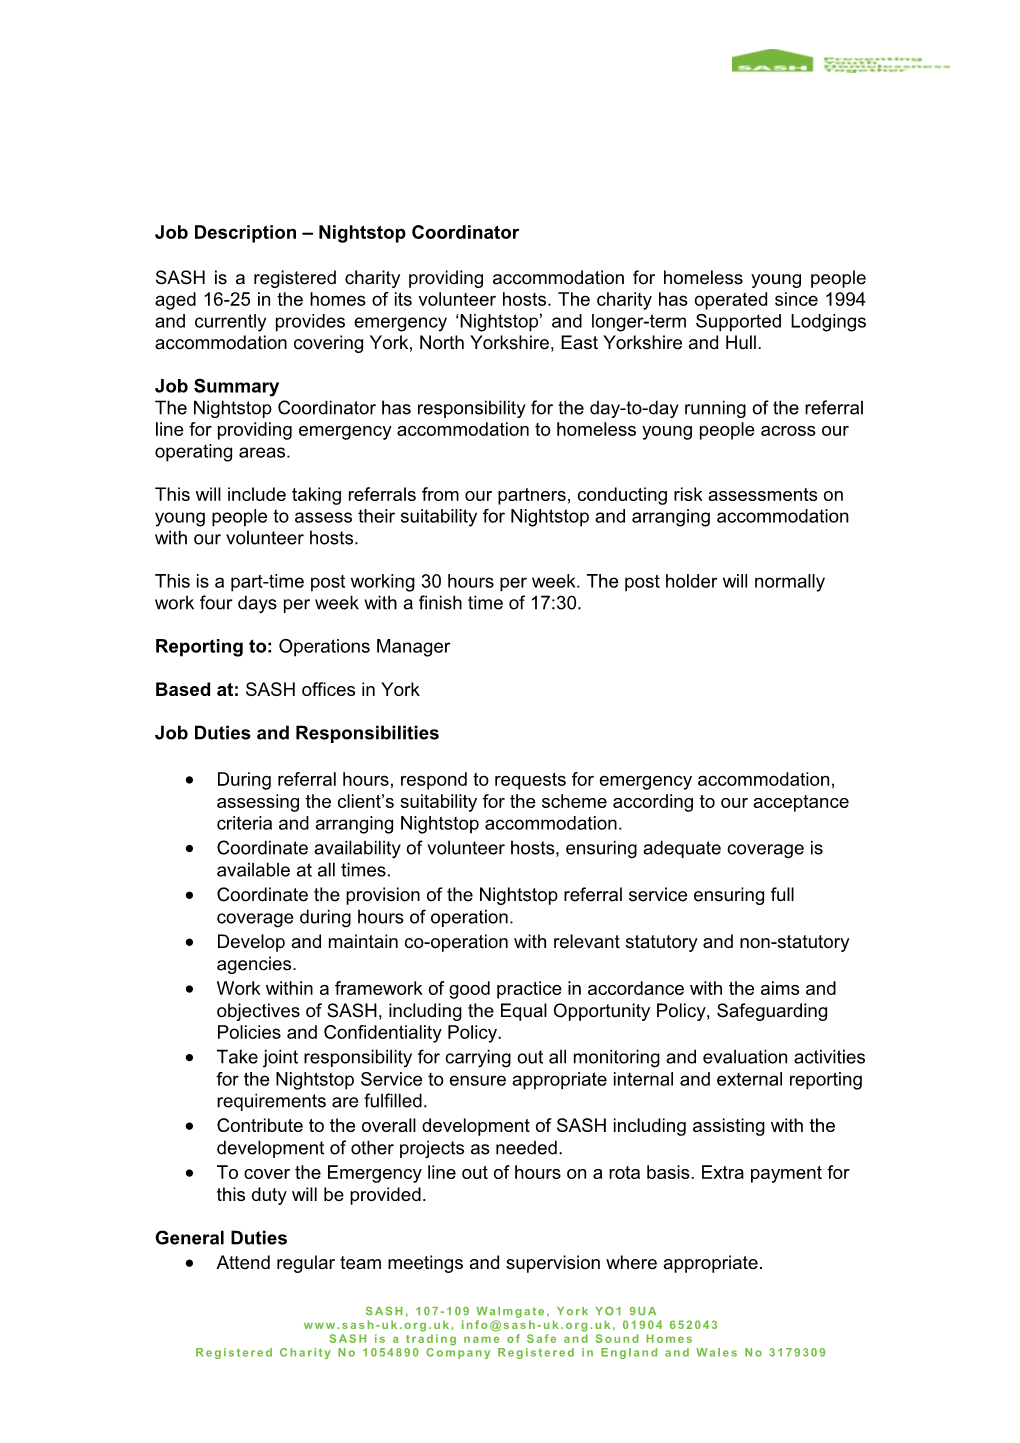 Job Description Nightstop Coordinator